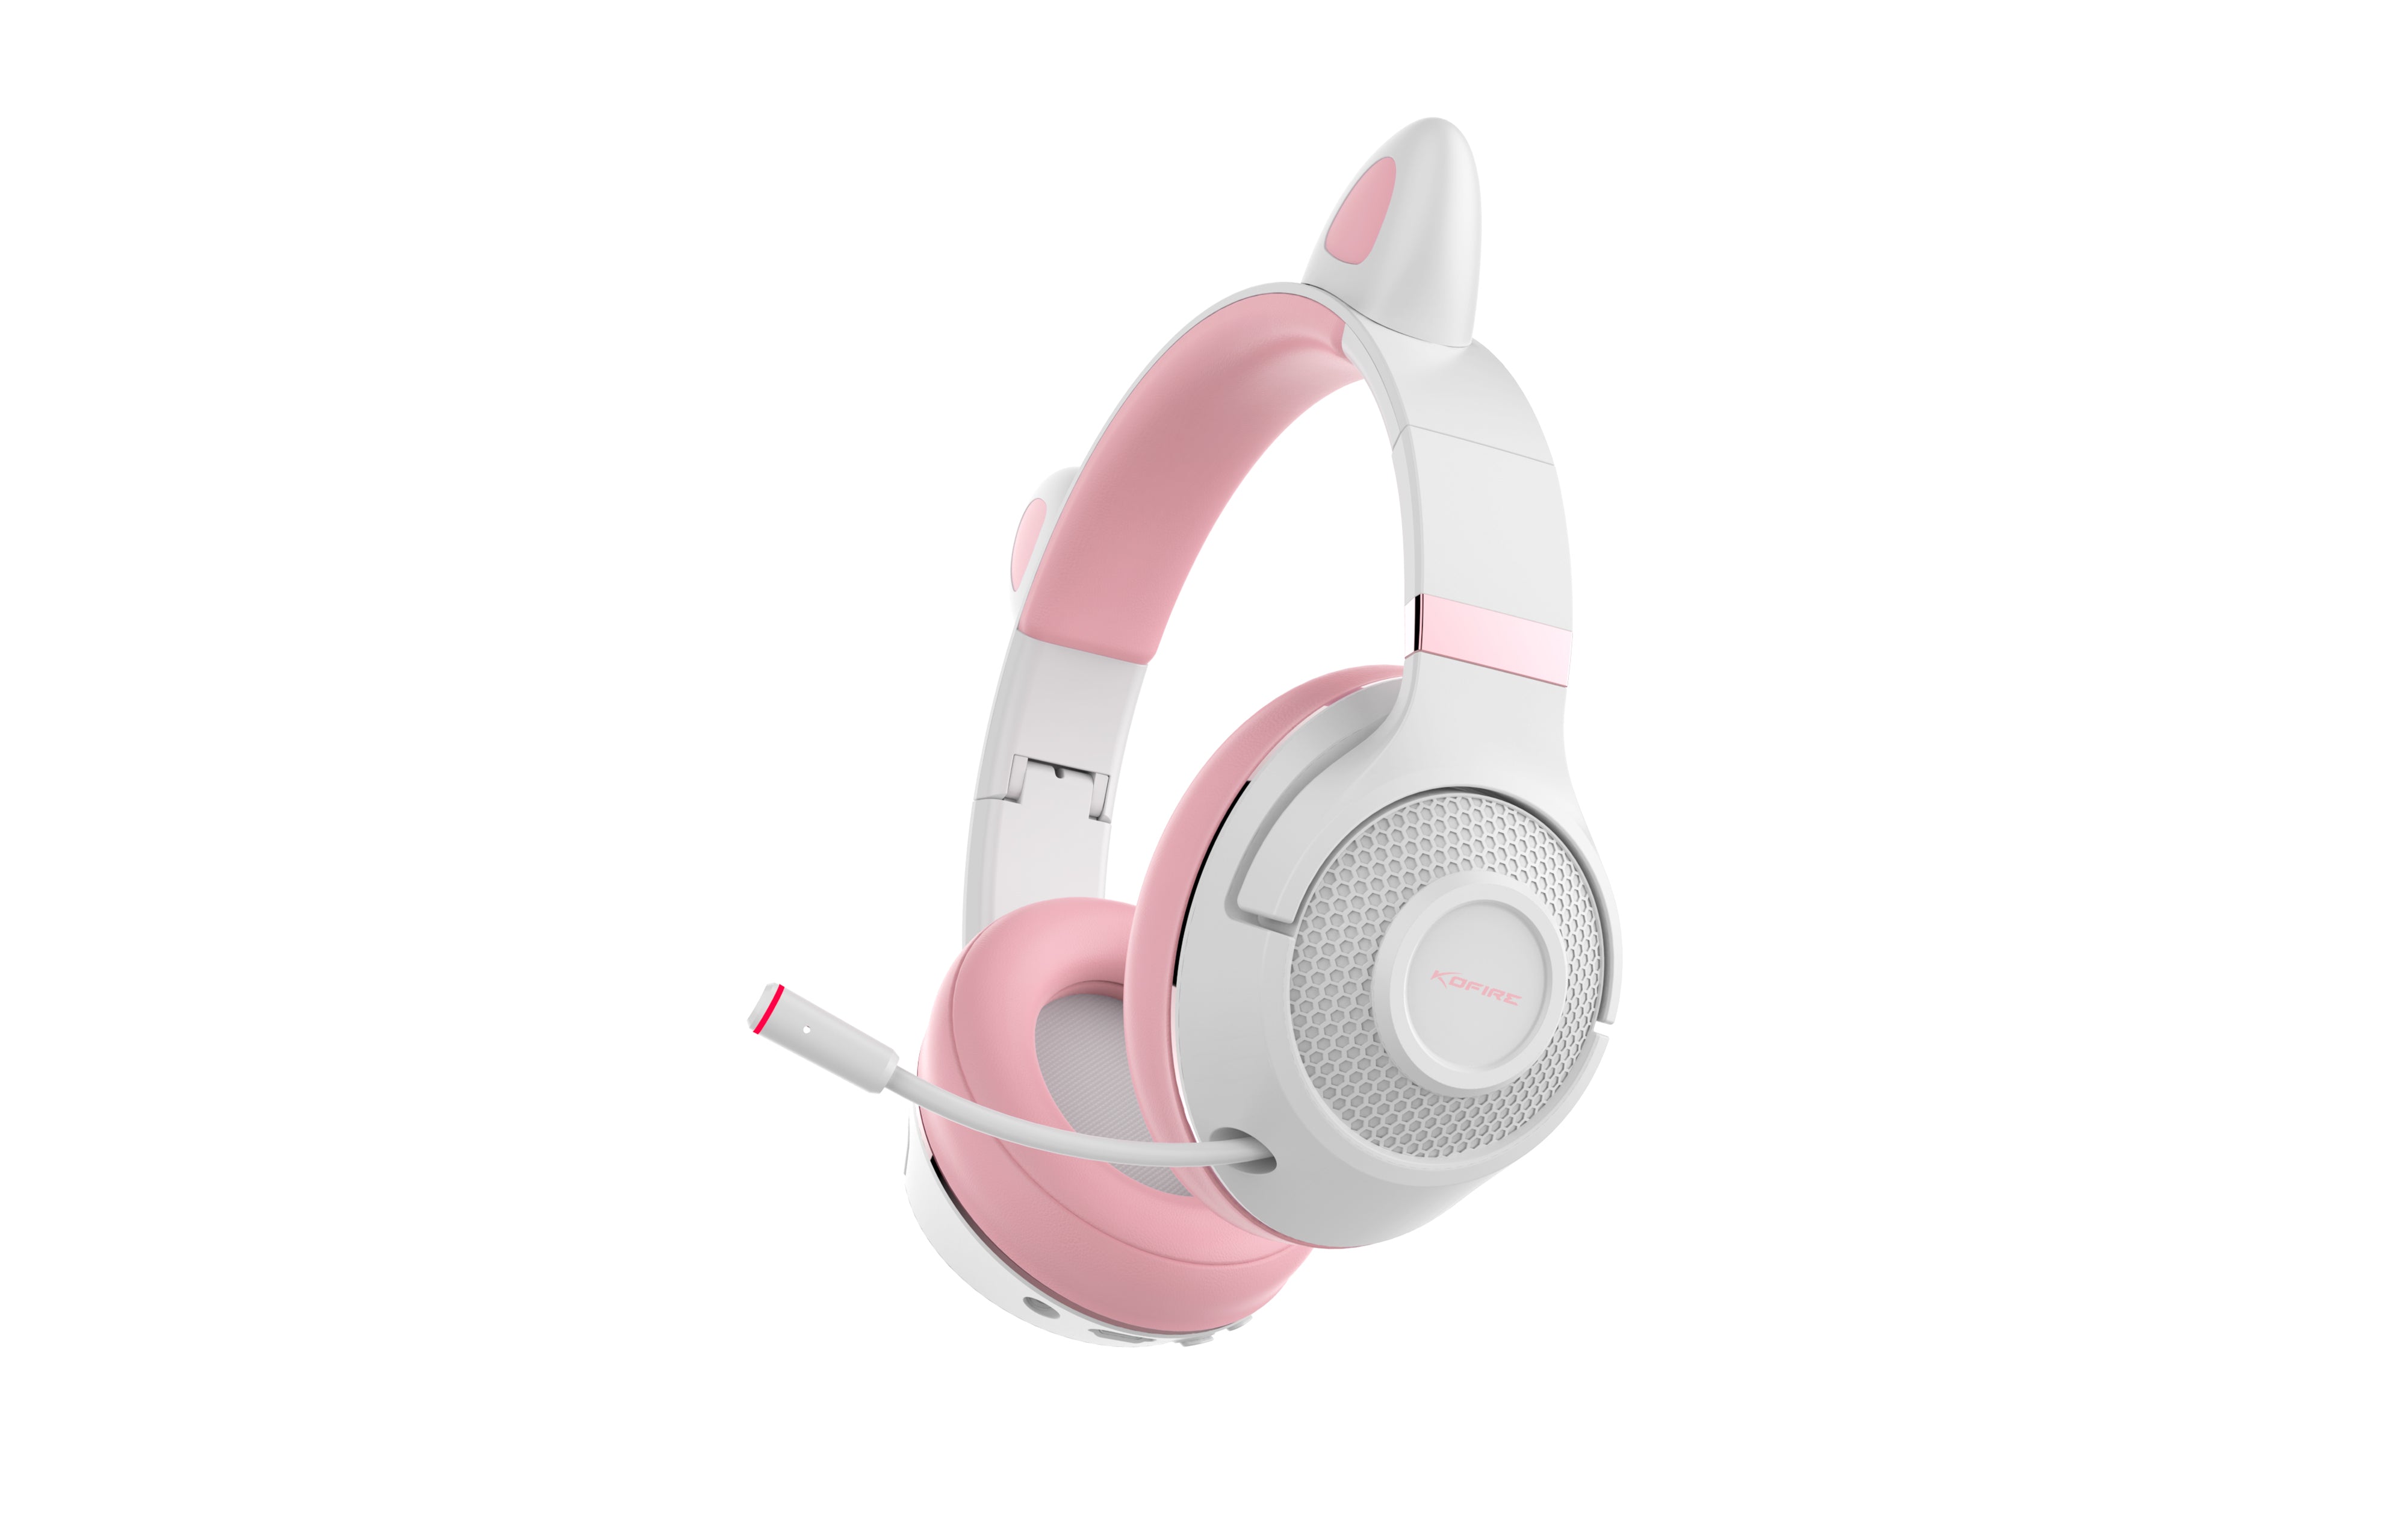 Woegel luky cat – draadloze gaming headset - roze